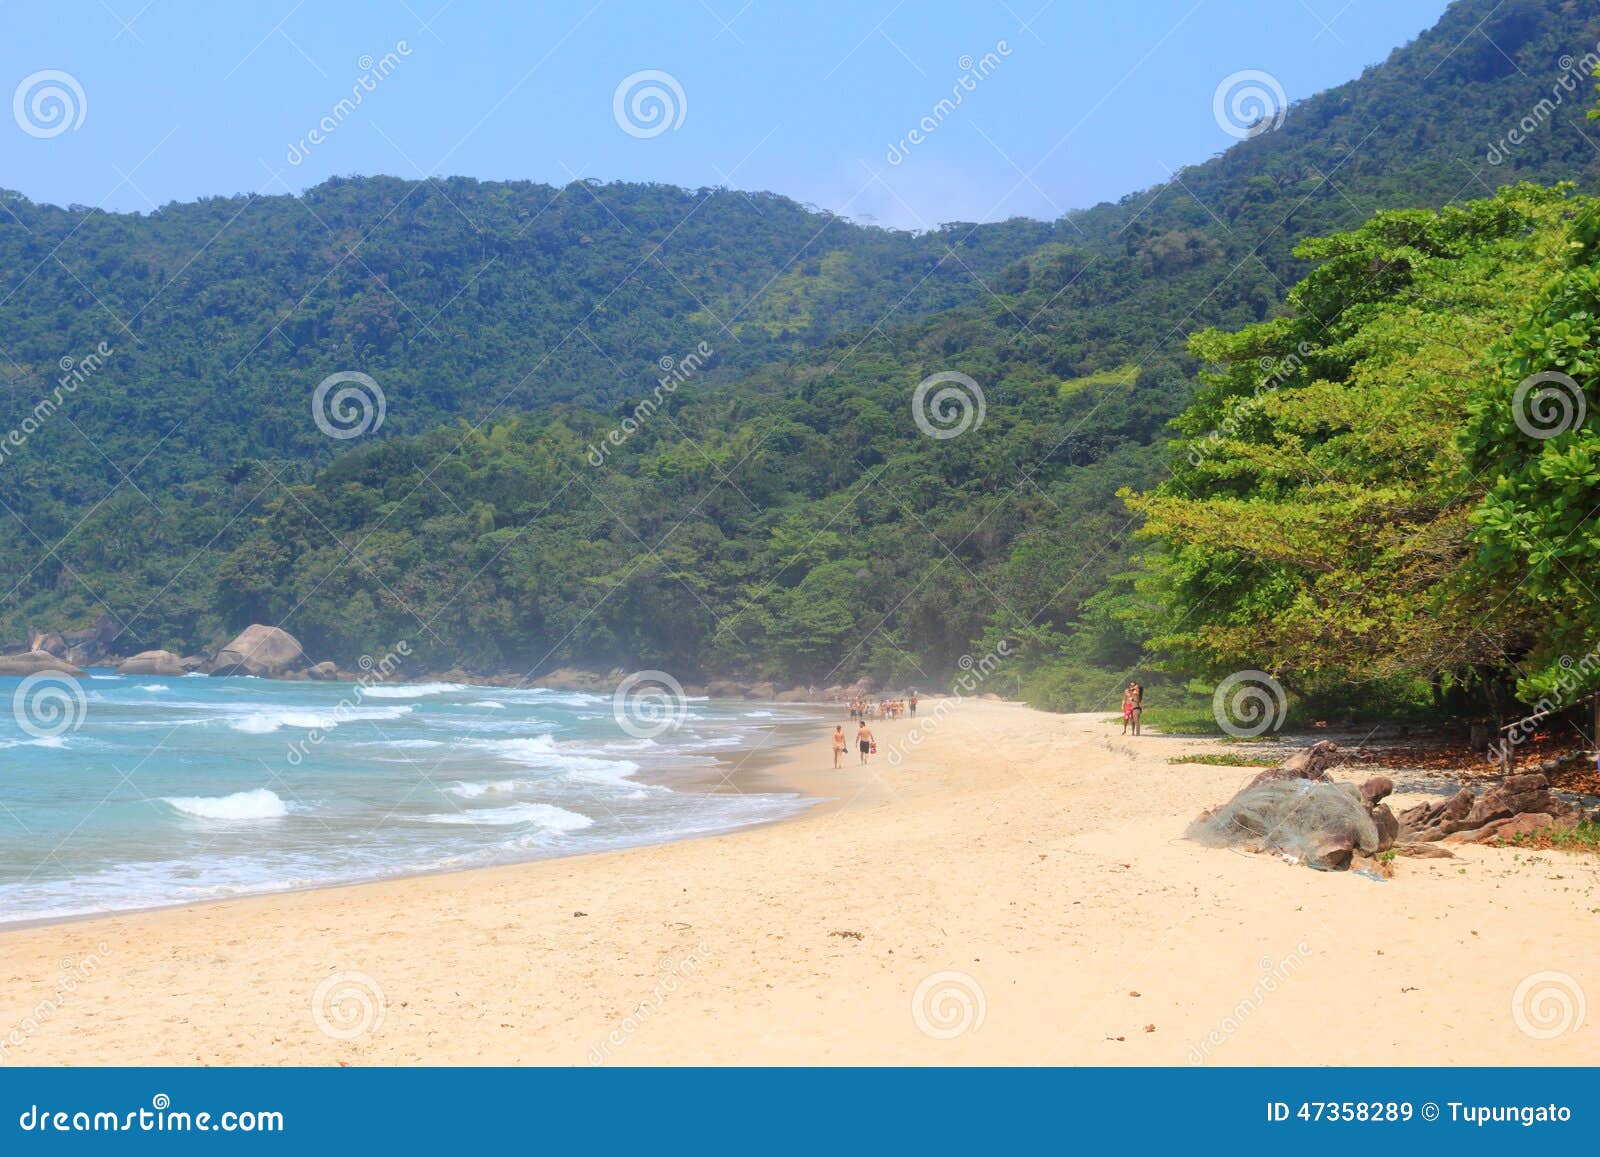 trindade beach, brazil